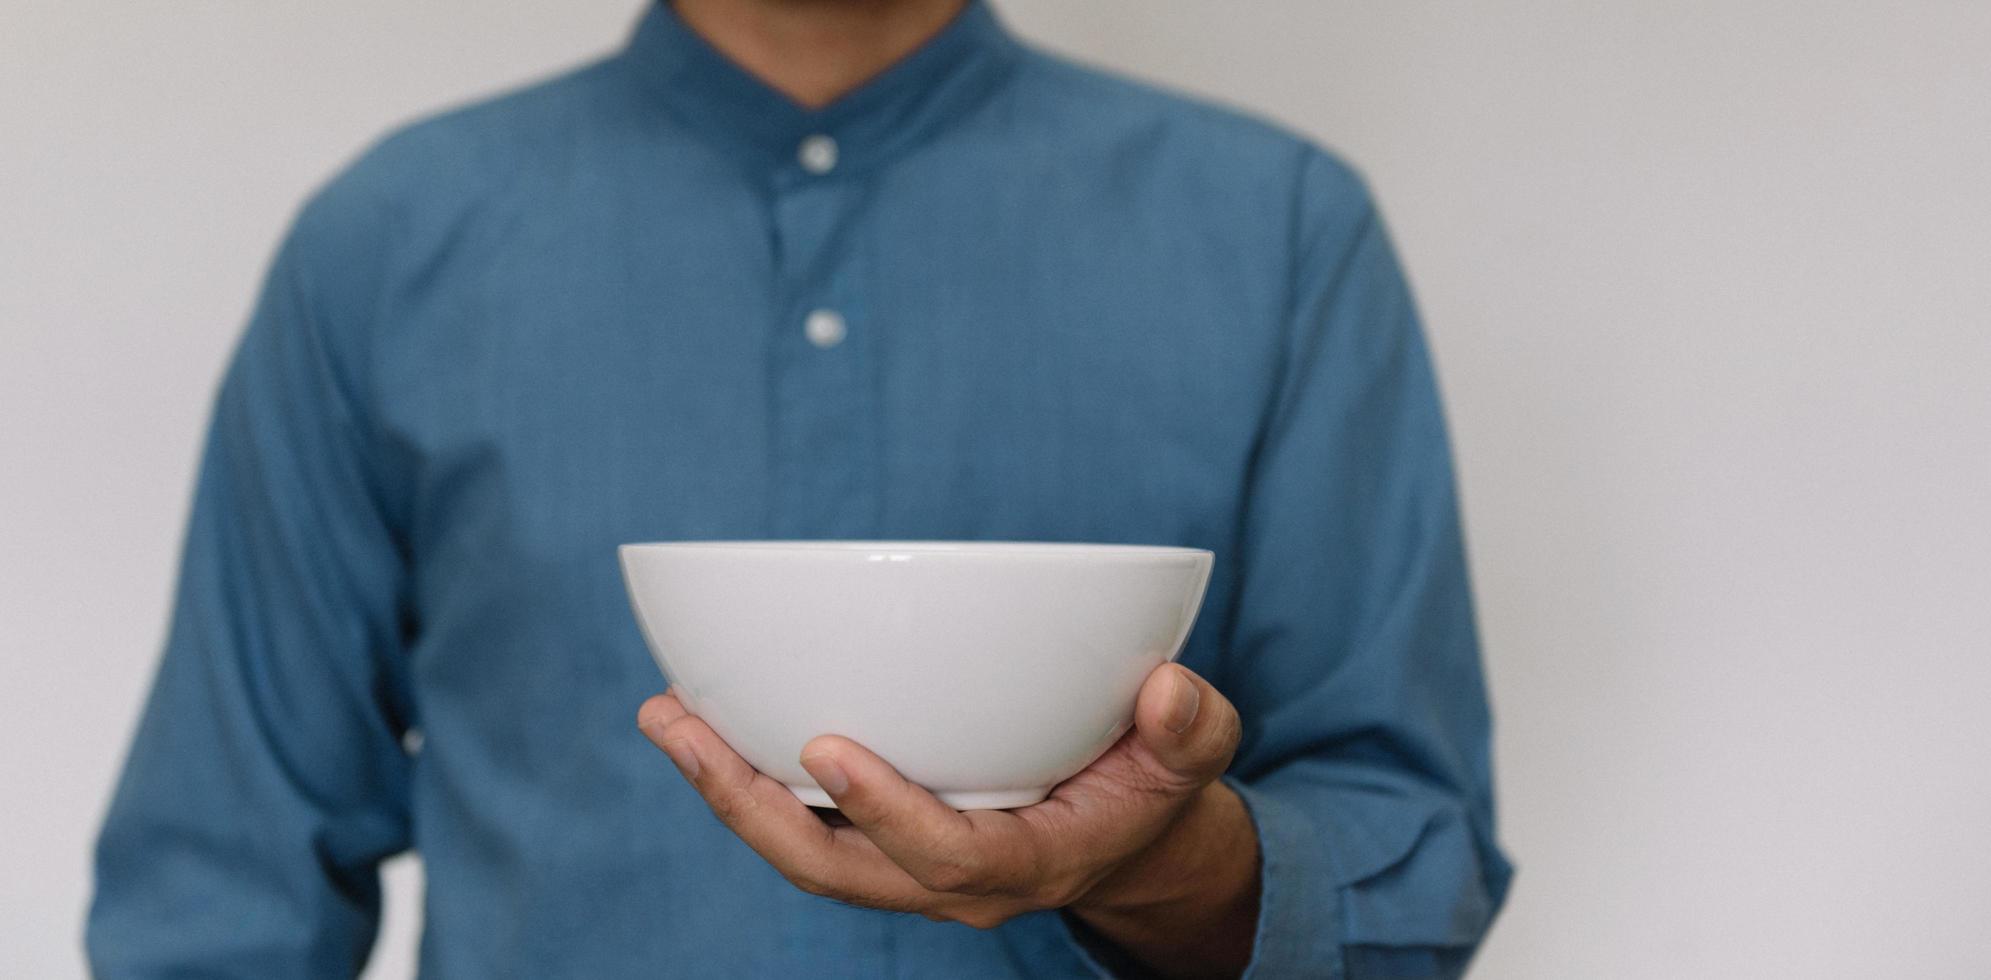 jonge knappe man met een lichtblauw shirt met een warm kopje ontbijt. foto